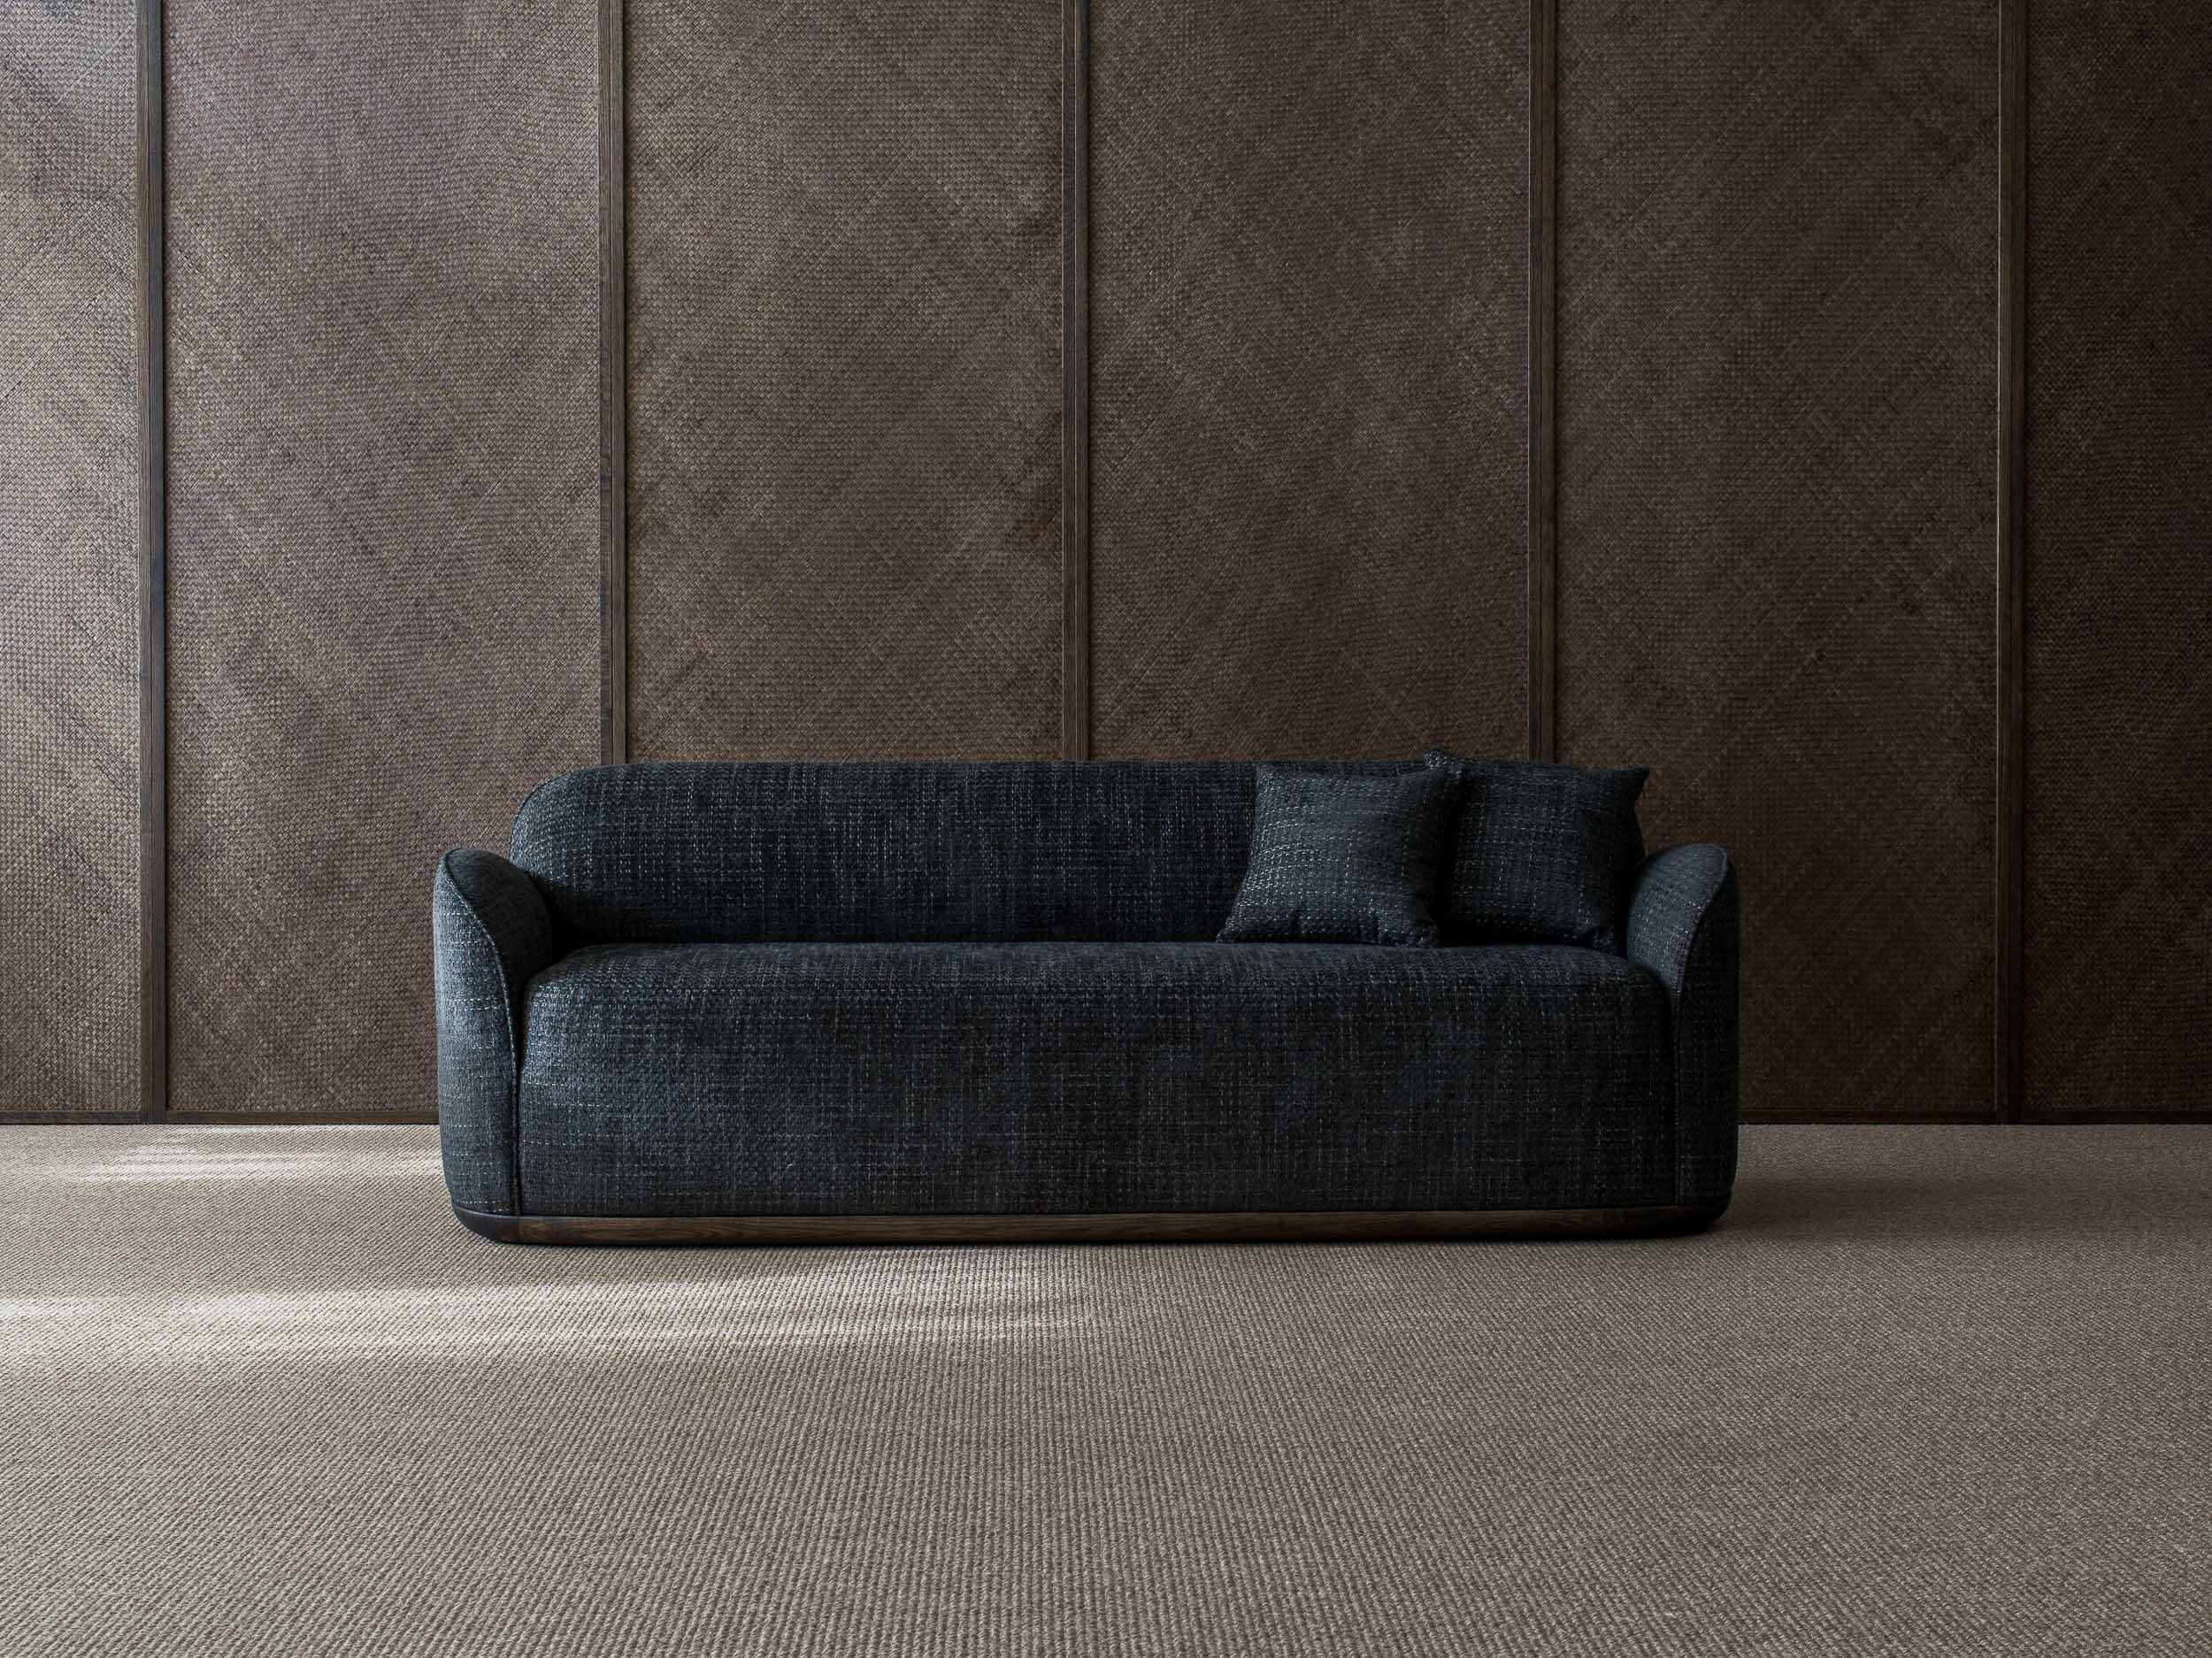 Unio 3 - sitzendes sofa von Poiat 
Entwerfer: Timo Mikkonen & Antti Rouhunkoski 

Collection UNIO 2021

Abmessungen: H. 72 x B. 200 T. 72 SH. 40
Abgebildetes Modell: Kat. 4: Pergamena 017 - Dedar
 
Mit der Unio Collection, die einen Sessel